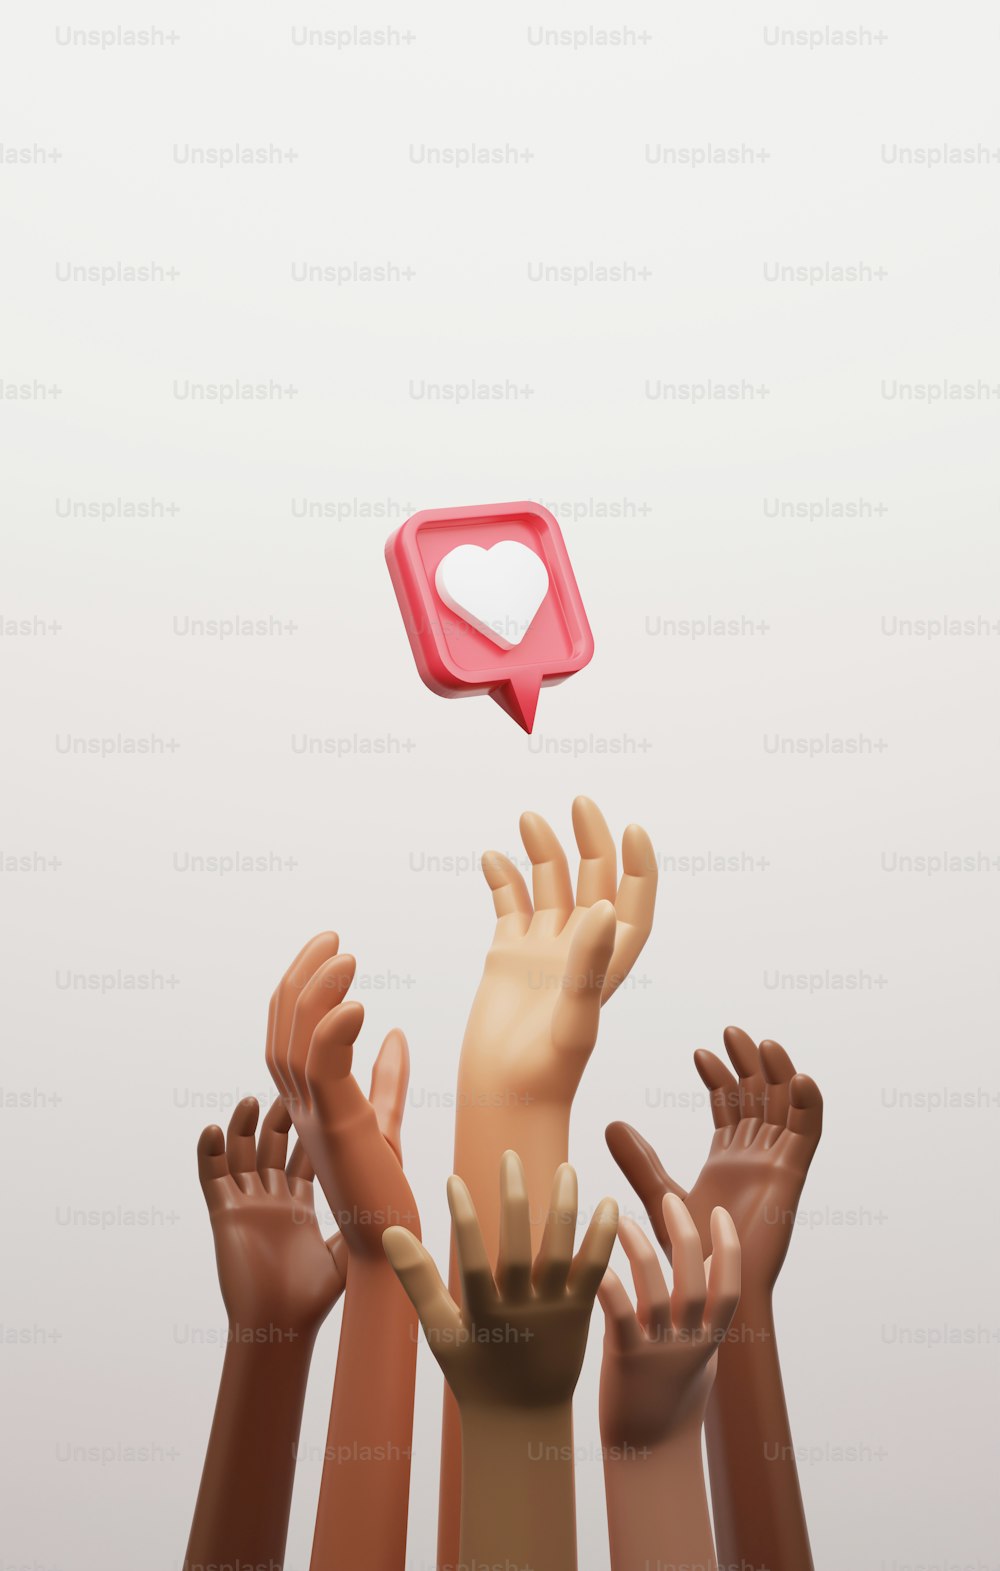 Il gruppo multietnico raggiunge l'icona del cuore sulla spilla rossa
Fame Competition e accettazione sui social media. Illustrazione di rendering 3D.